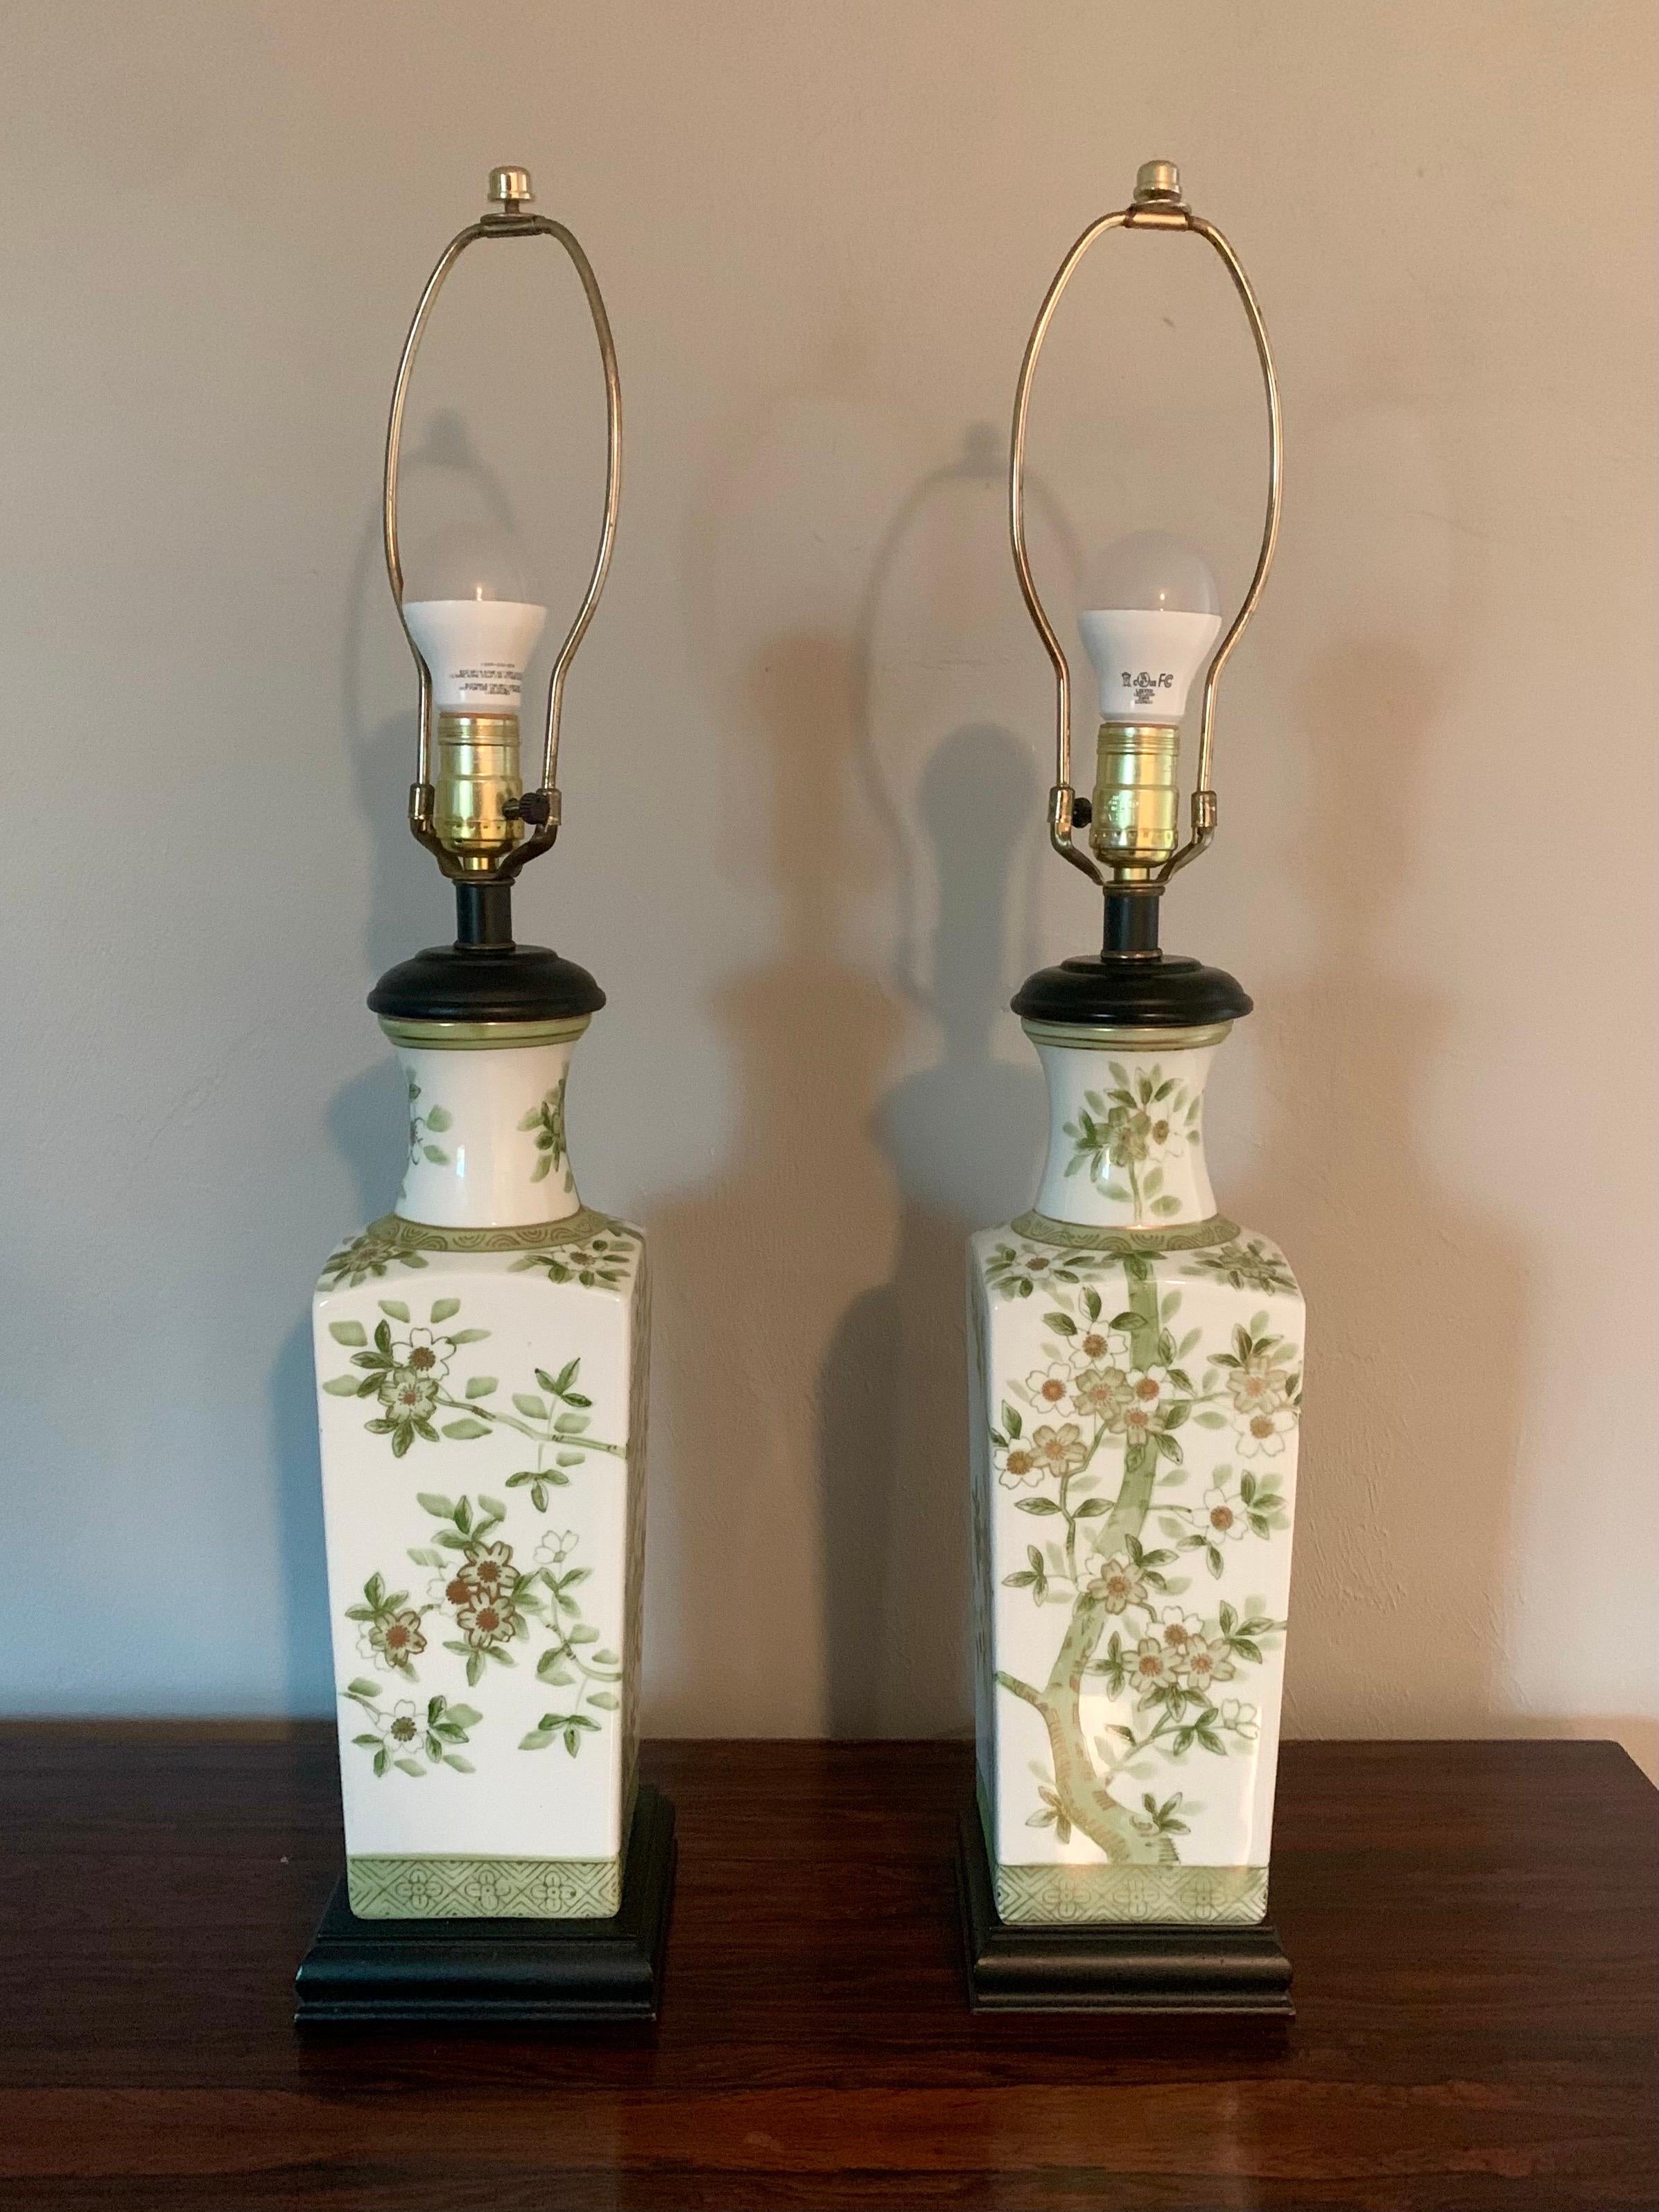 Ein Paar elegante Porzellanlampen aus Japan. CIRCA 1940er - 1950er Jahre. Eine glänzend weiße Vase. Auf allen Seiten mit Bildern von Kirschblüten verziert. Handbemalt mit verschiedenen Grün- und Goldtönen. 

Schwarzer Holzsockel. 

Verkauft ohne